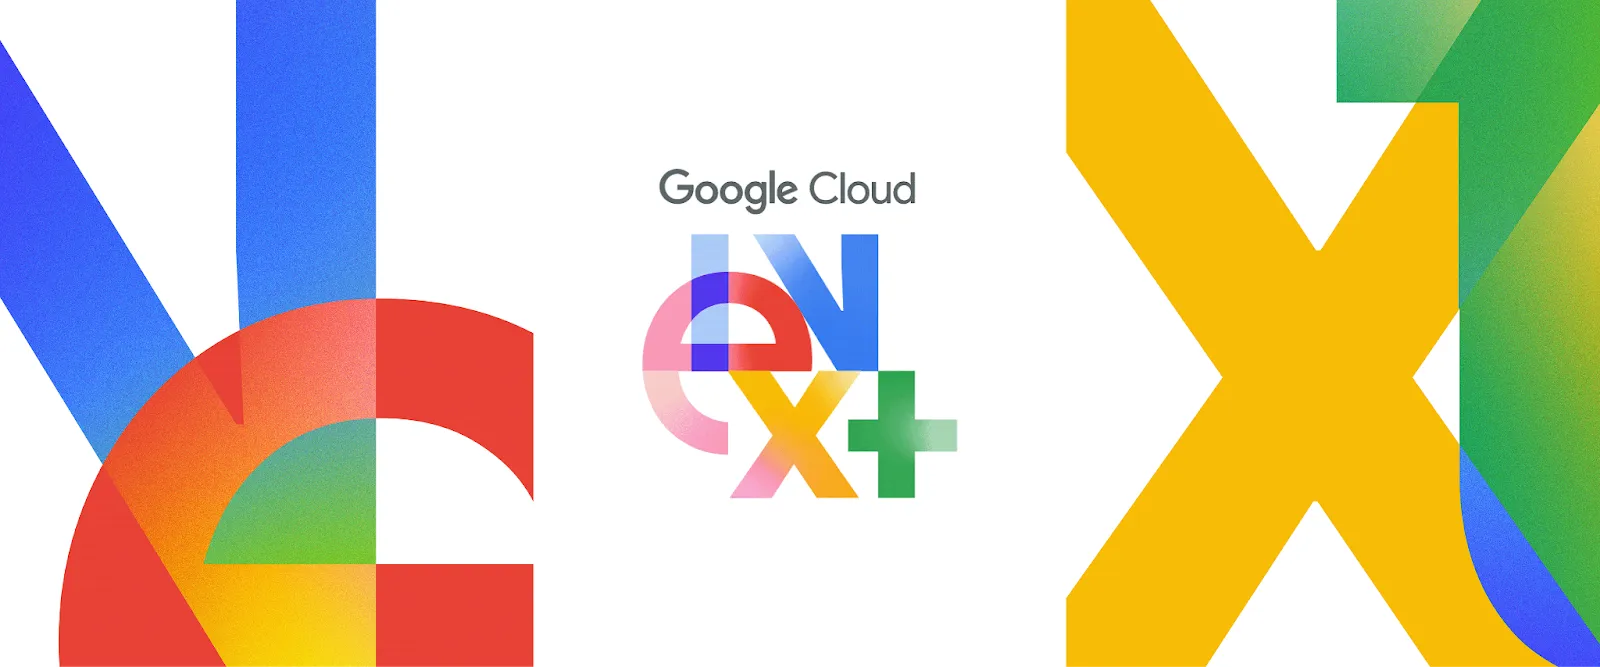 Flutter Makes Waves at Google Cloud Next: Enhancing Developer Workflows and Integration